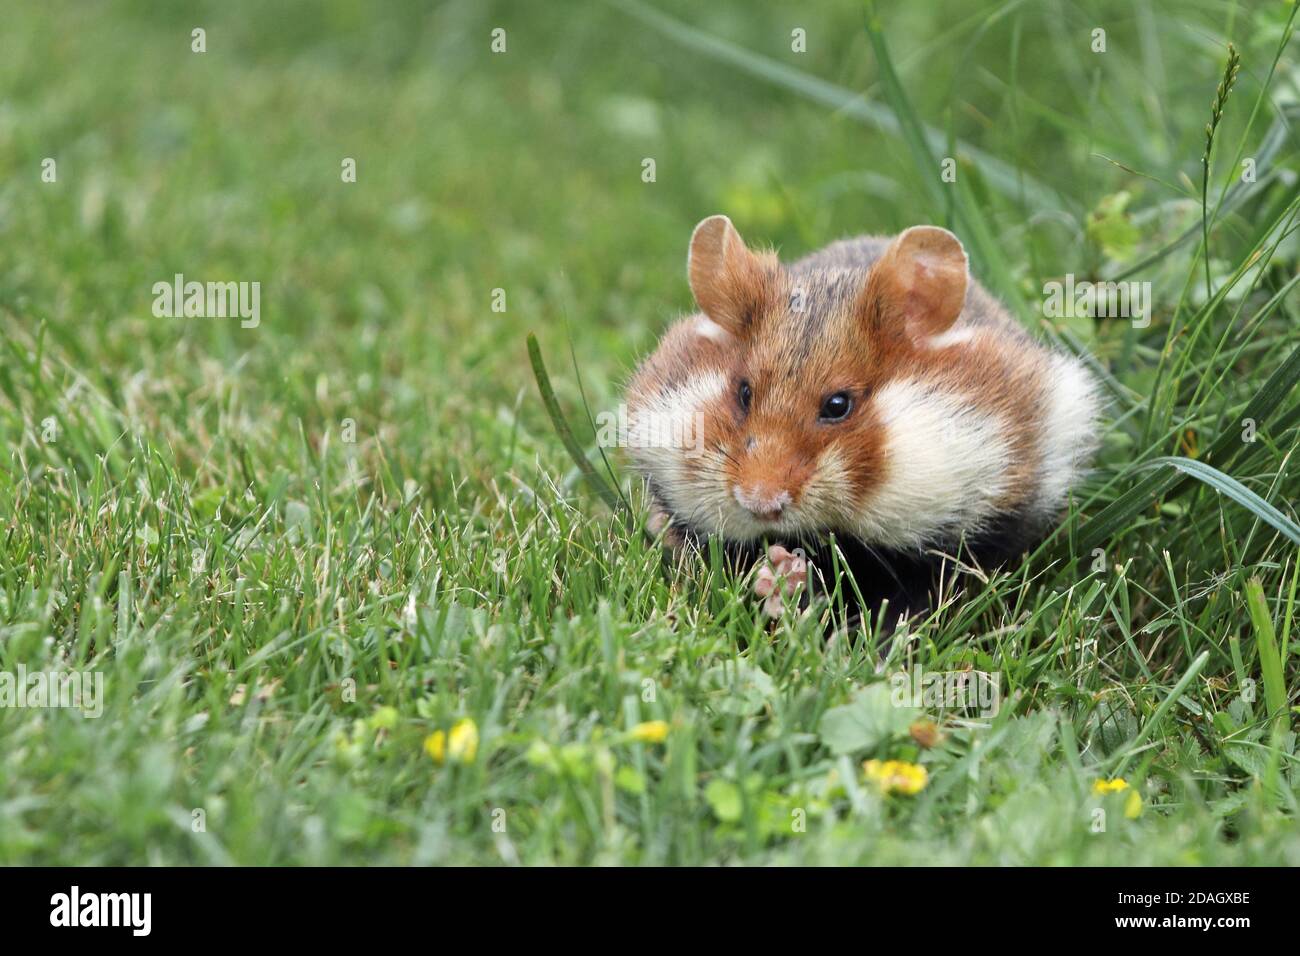 Hamster commun, hamster à ventre noir (Cricetus cricetus), assis dans un pré avec des joues pleines, joues de hamster, Autriche Banque D'Images